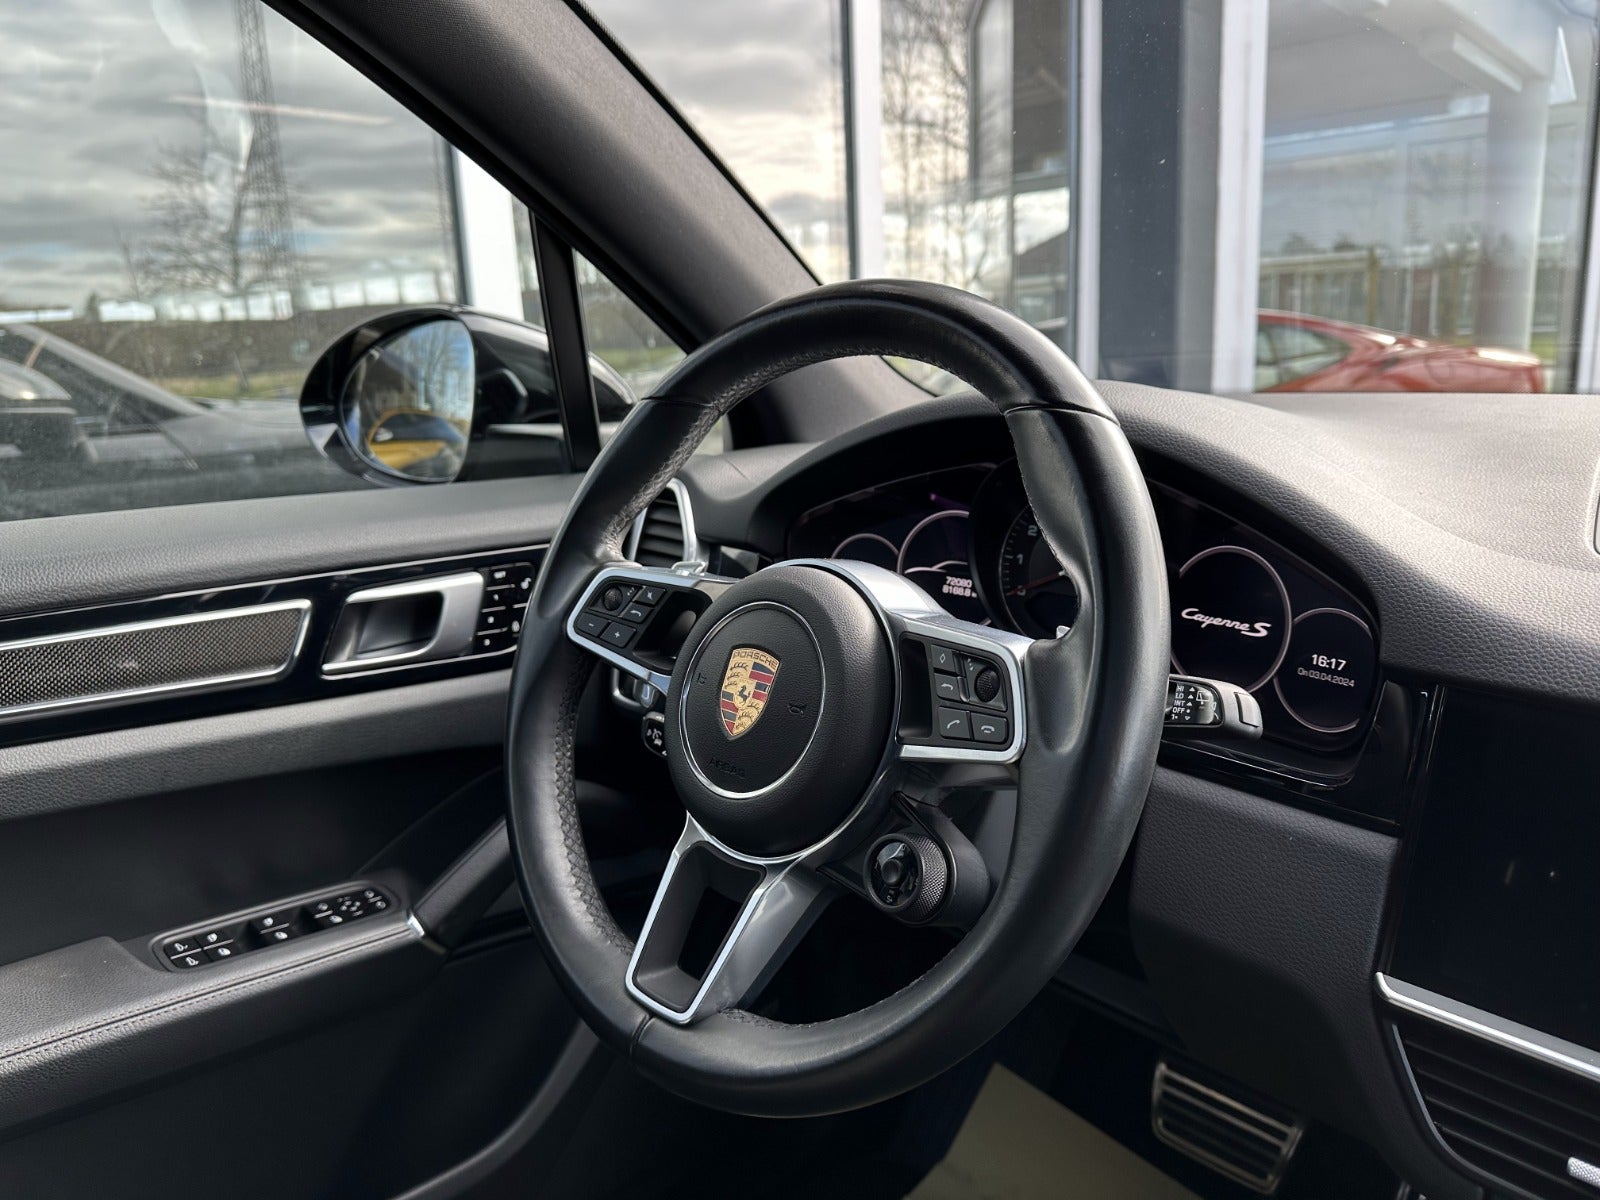 Porsche Cayenne S 2018